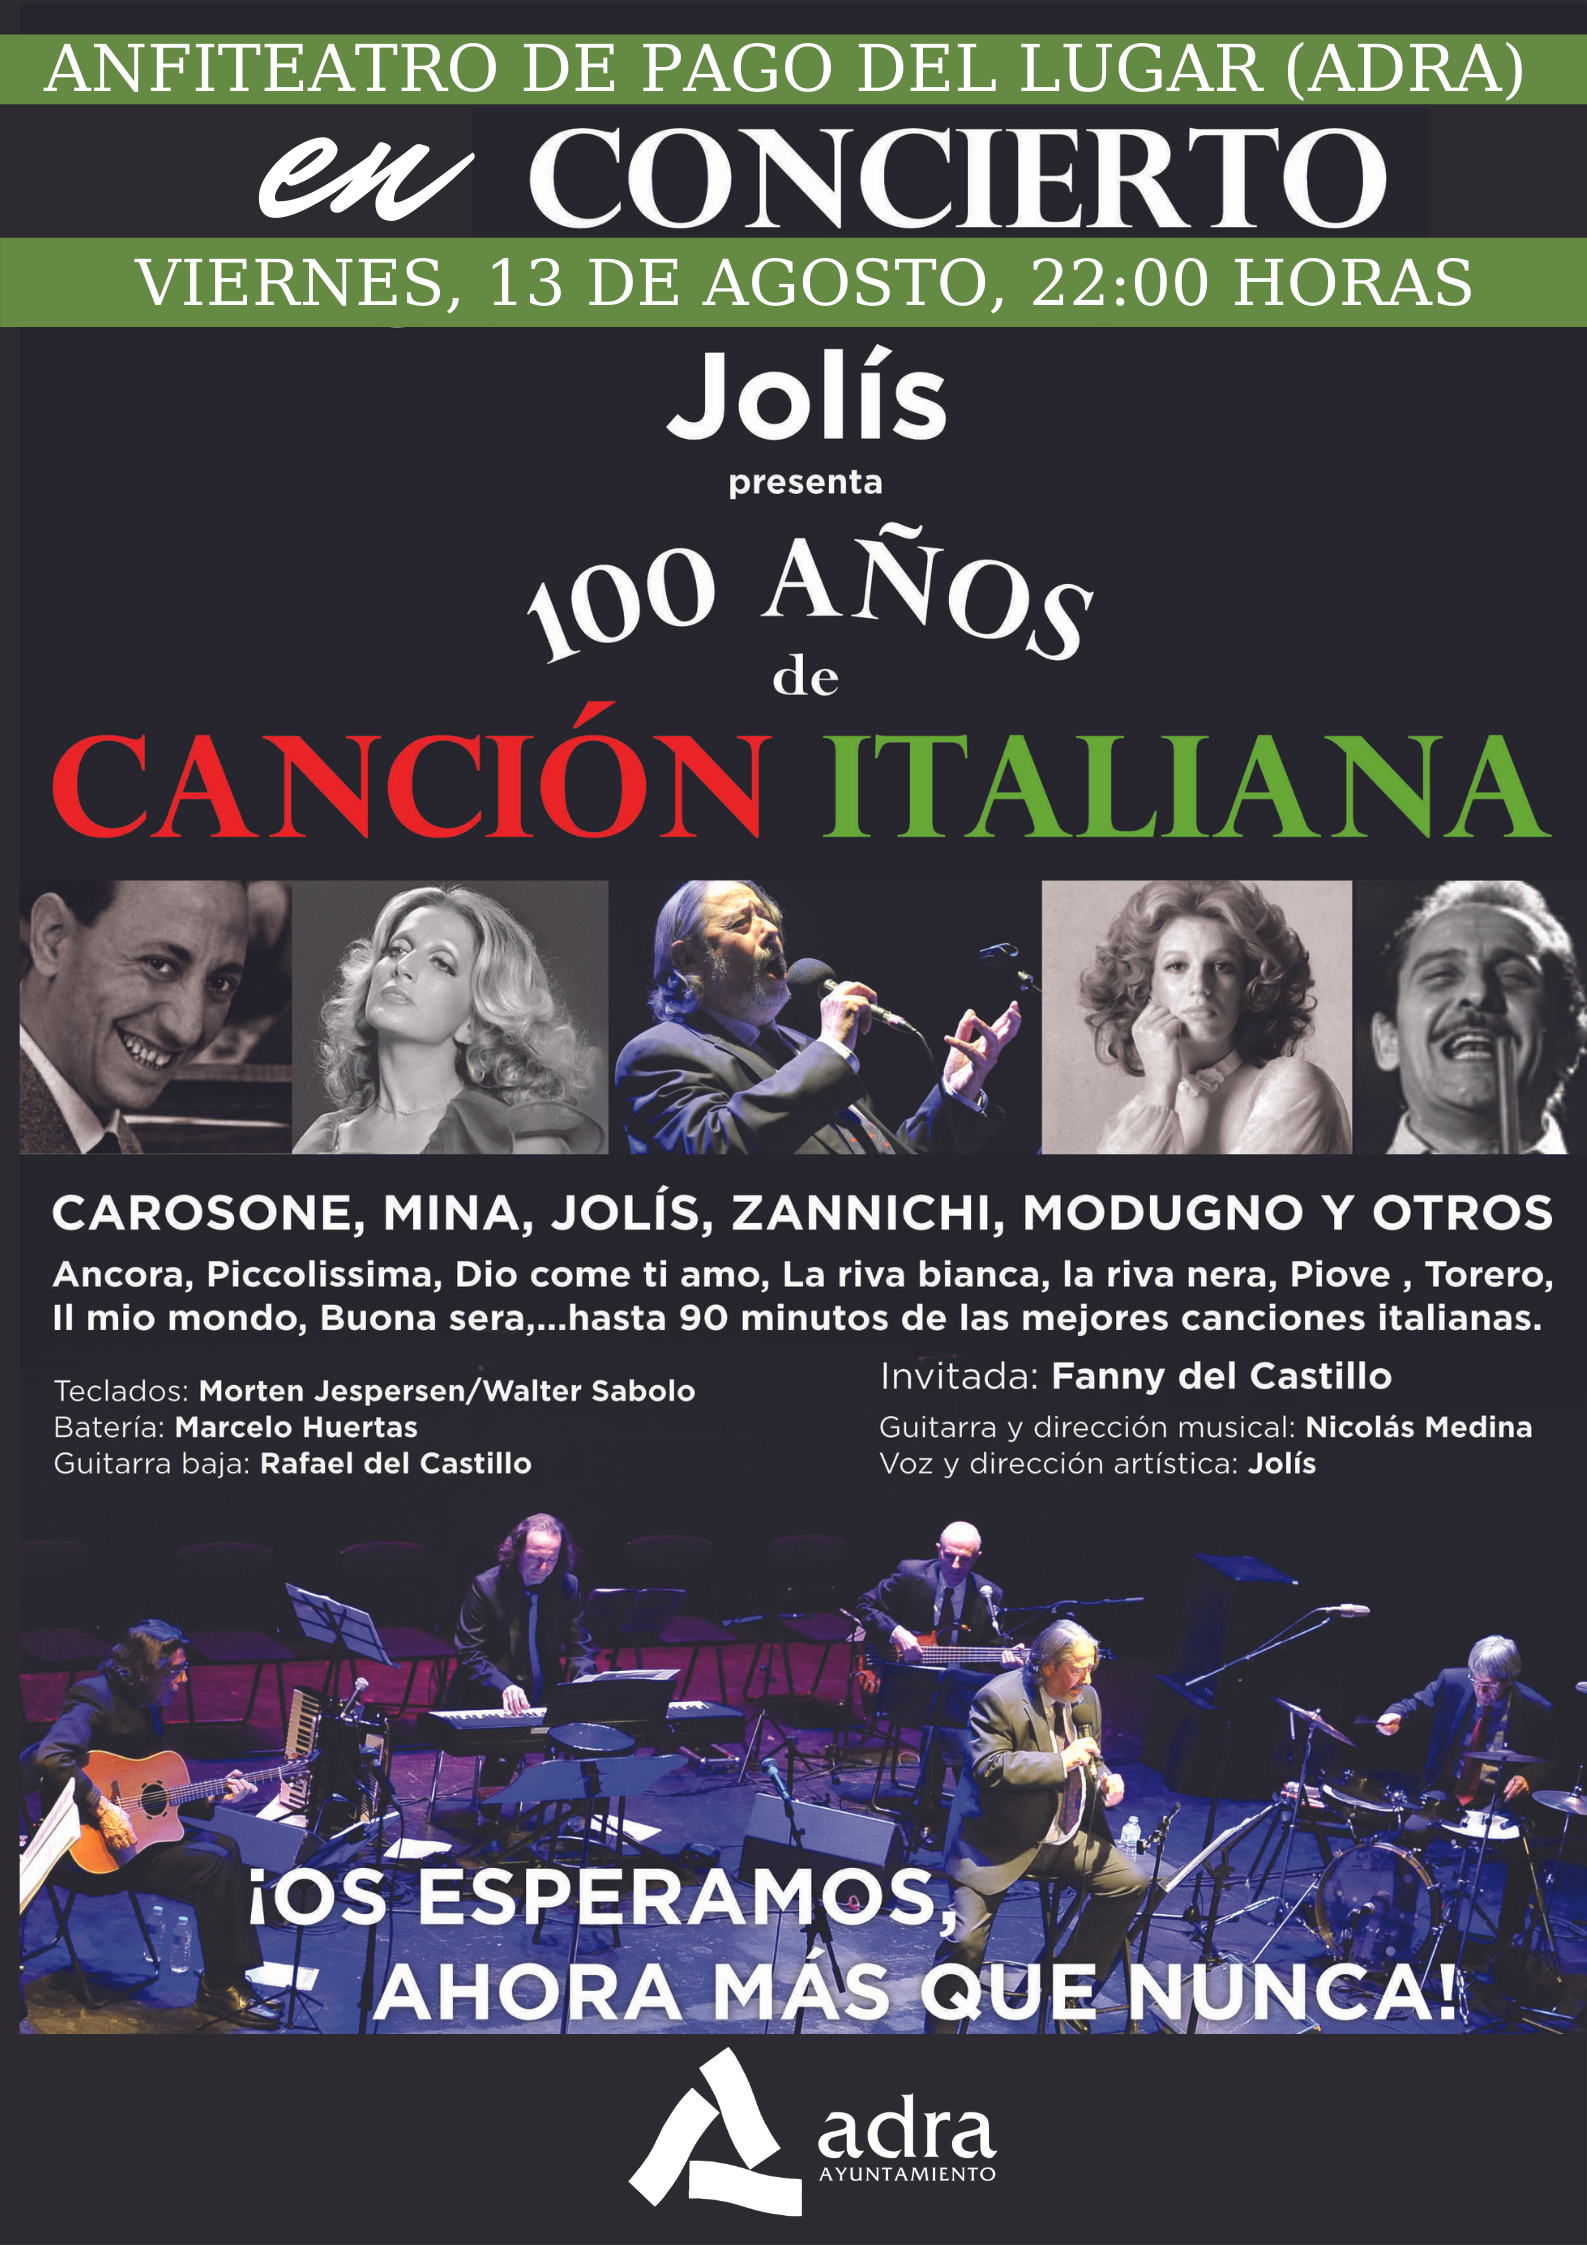 Jolís y sus ‘100 años de canción italiana’ llega a Adra este viernes con un espectáculo junto al mar